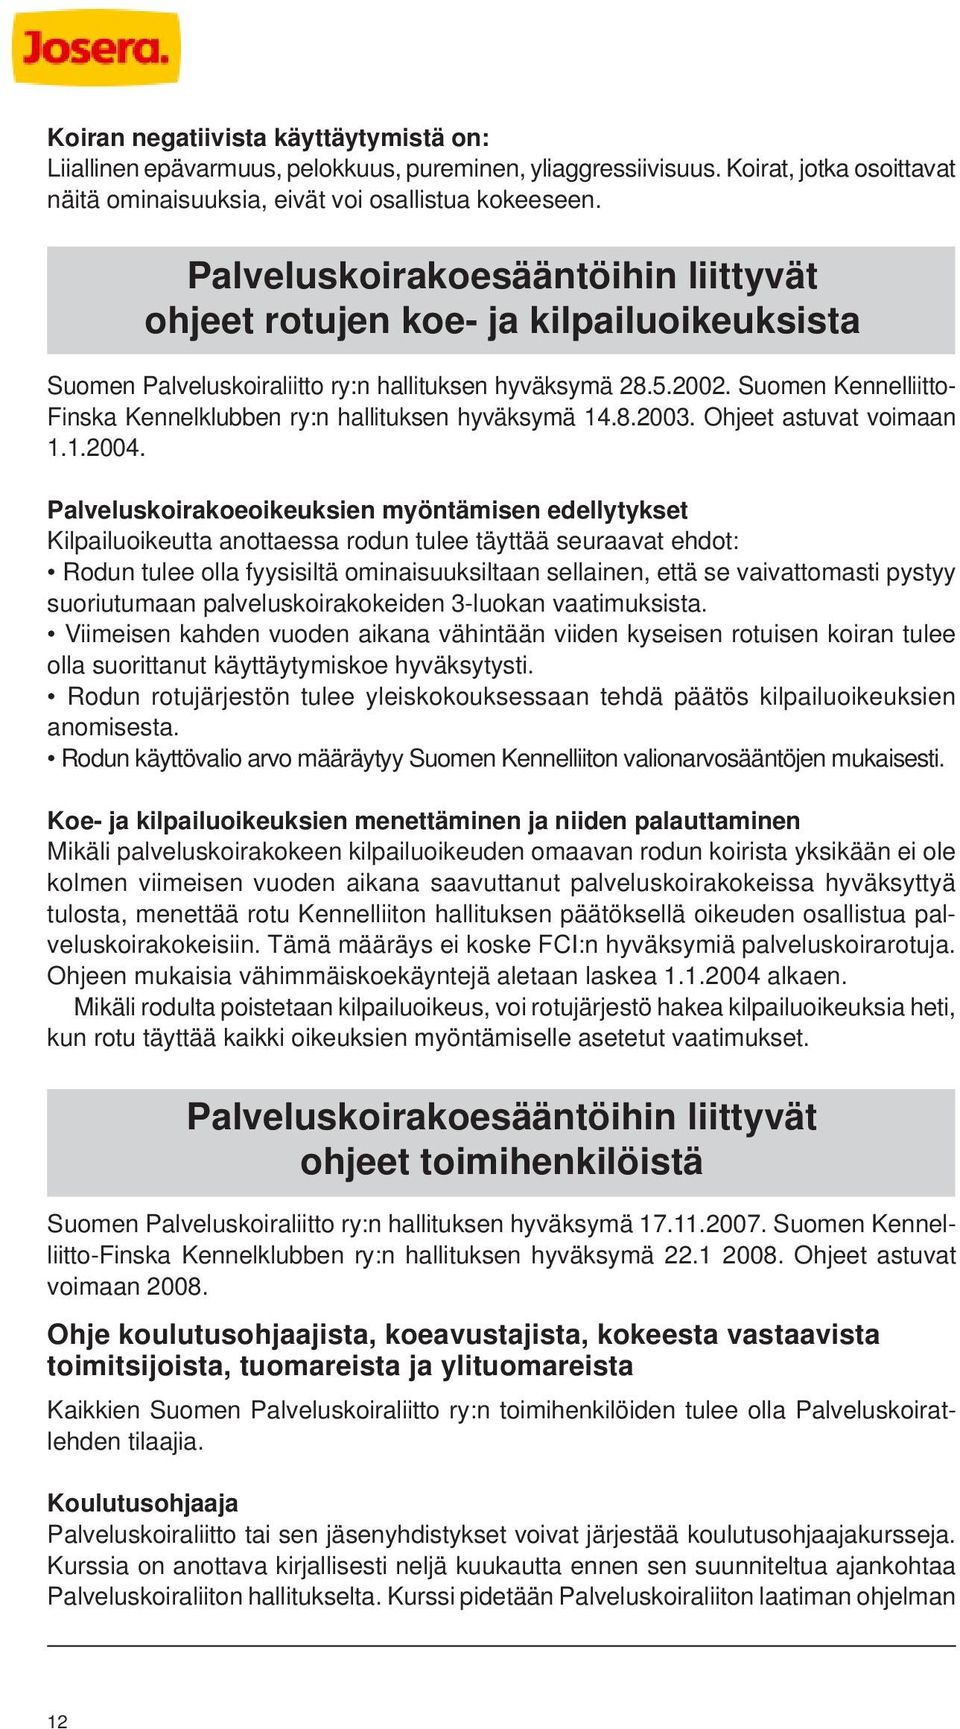 Suomen Kennelliitto- Finska Kennelklubben ry:n hallituksen hyväksymä 14.8.2003. Ohjeet astuvat voimaan 1.1.2004.